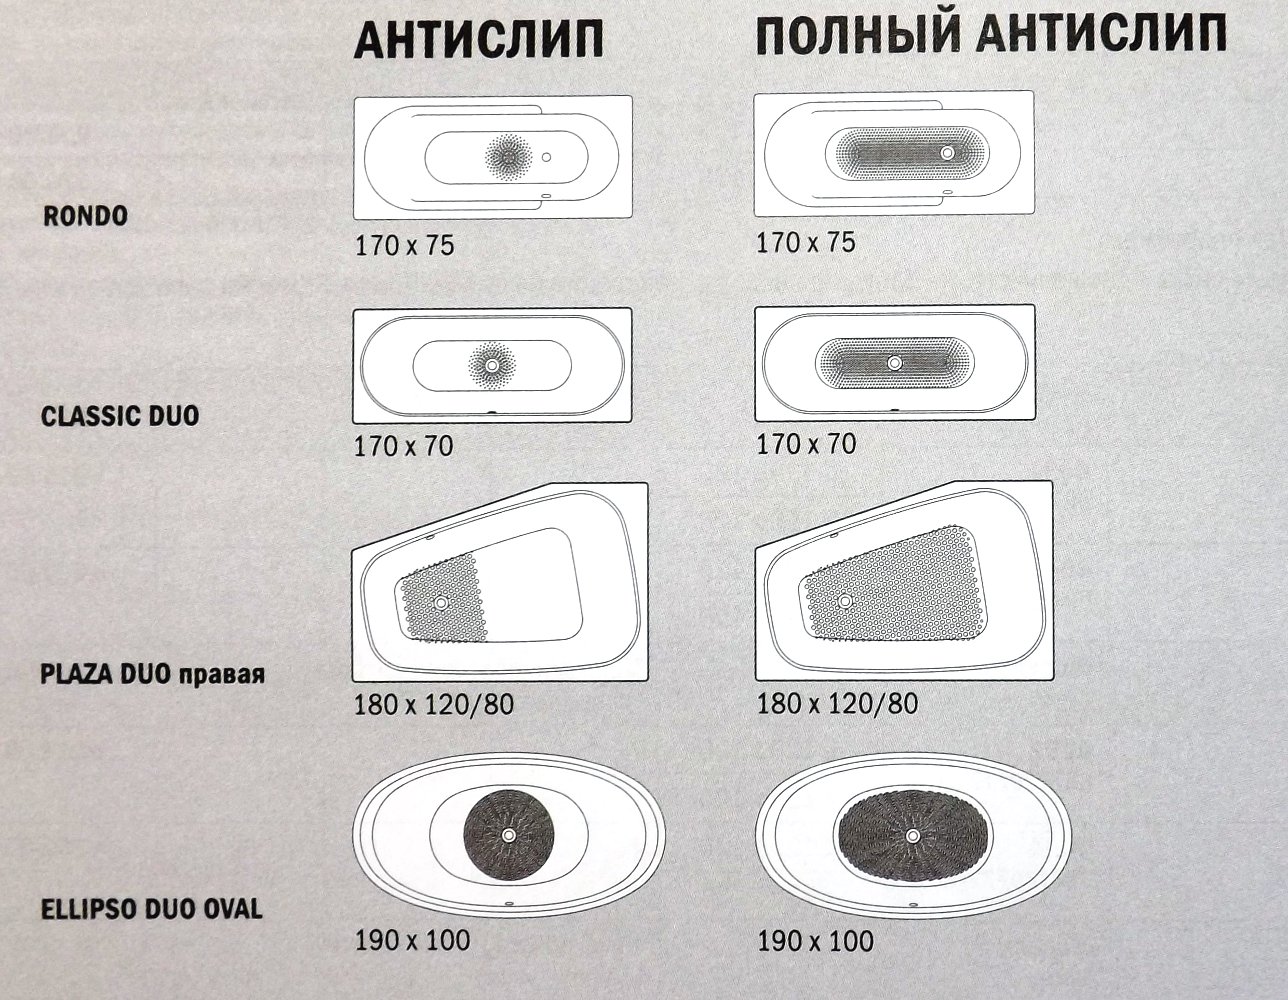 Варианты противоскользящих покрытий для стальных эмалированных ванн Kaldewei в 2014 году